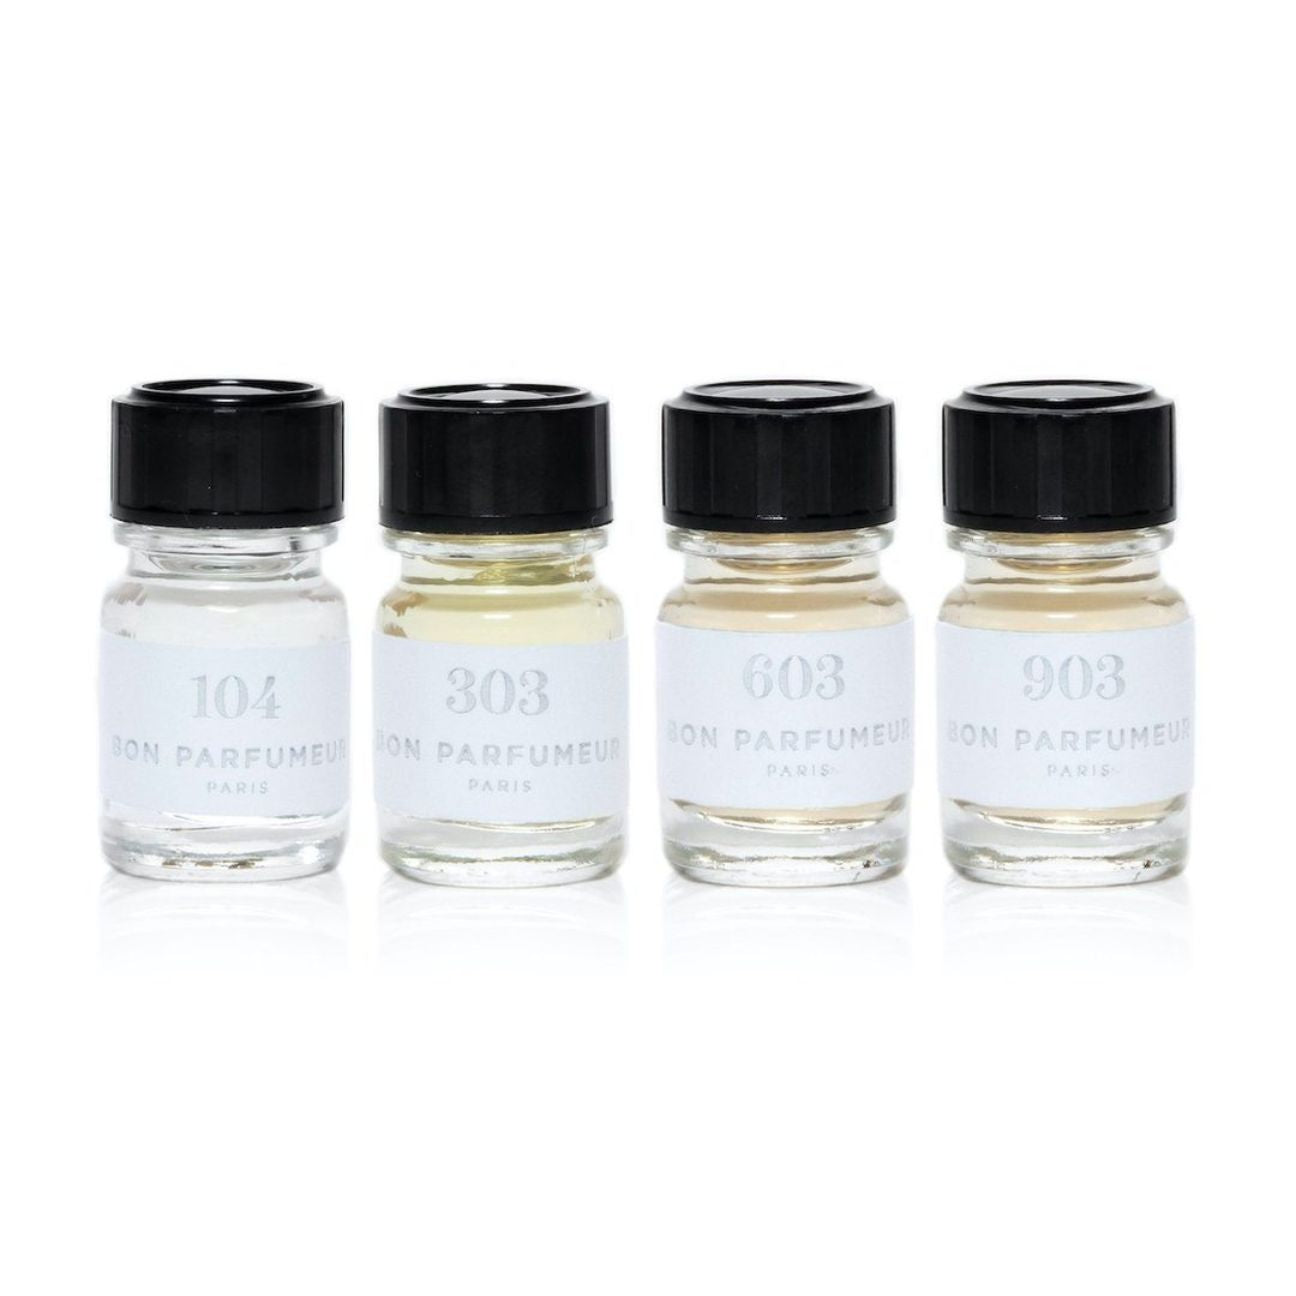 Les privés Bon Parfumeur samples set